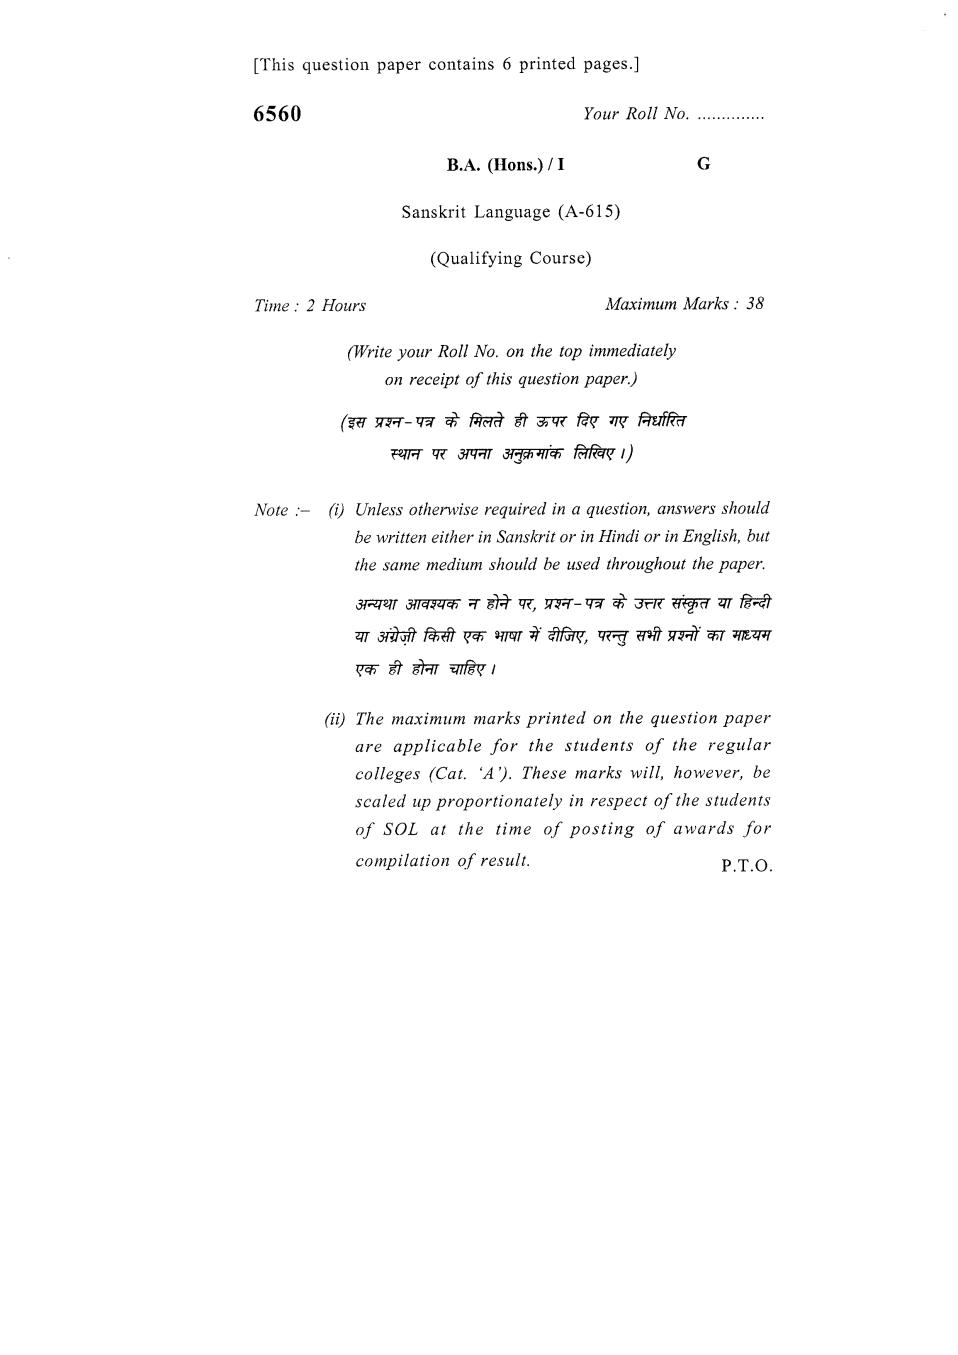 DU SOL Question Paper 2018 BA (Hons.) Sanskrit Language - Page 1